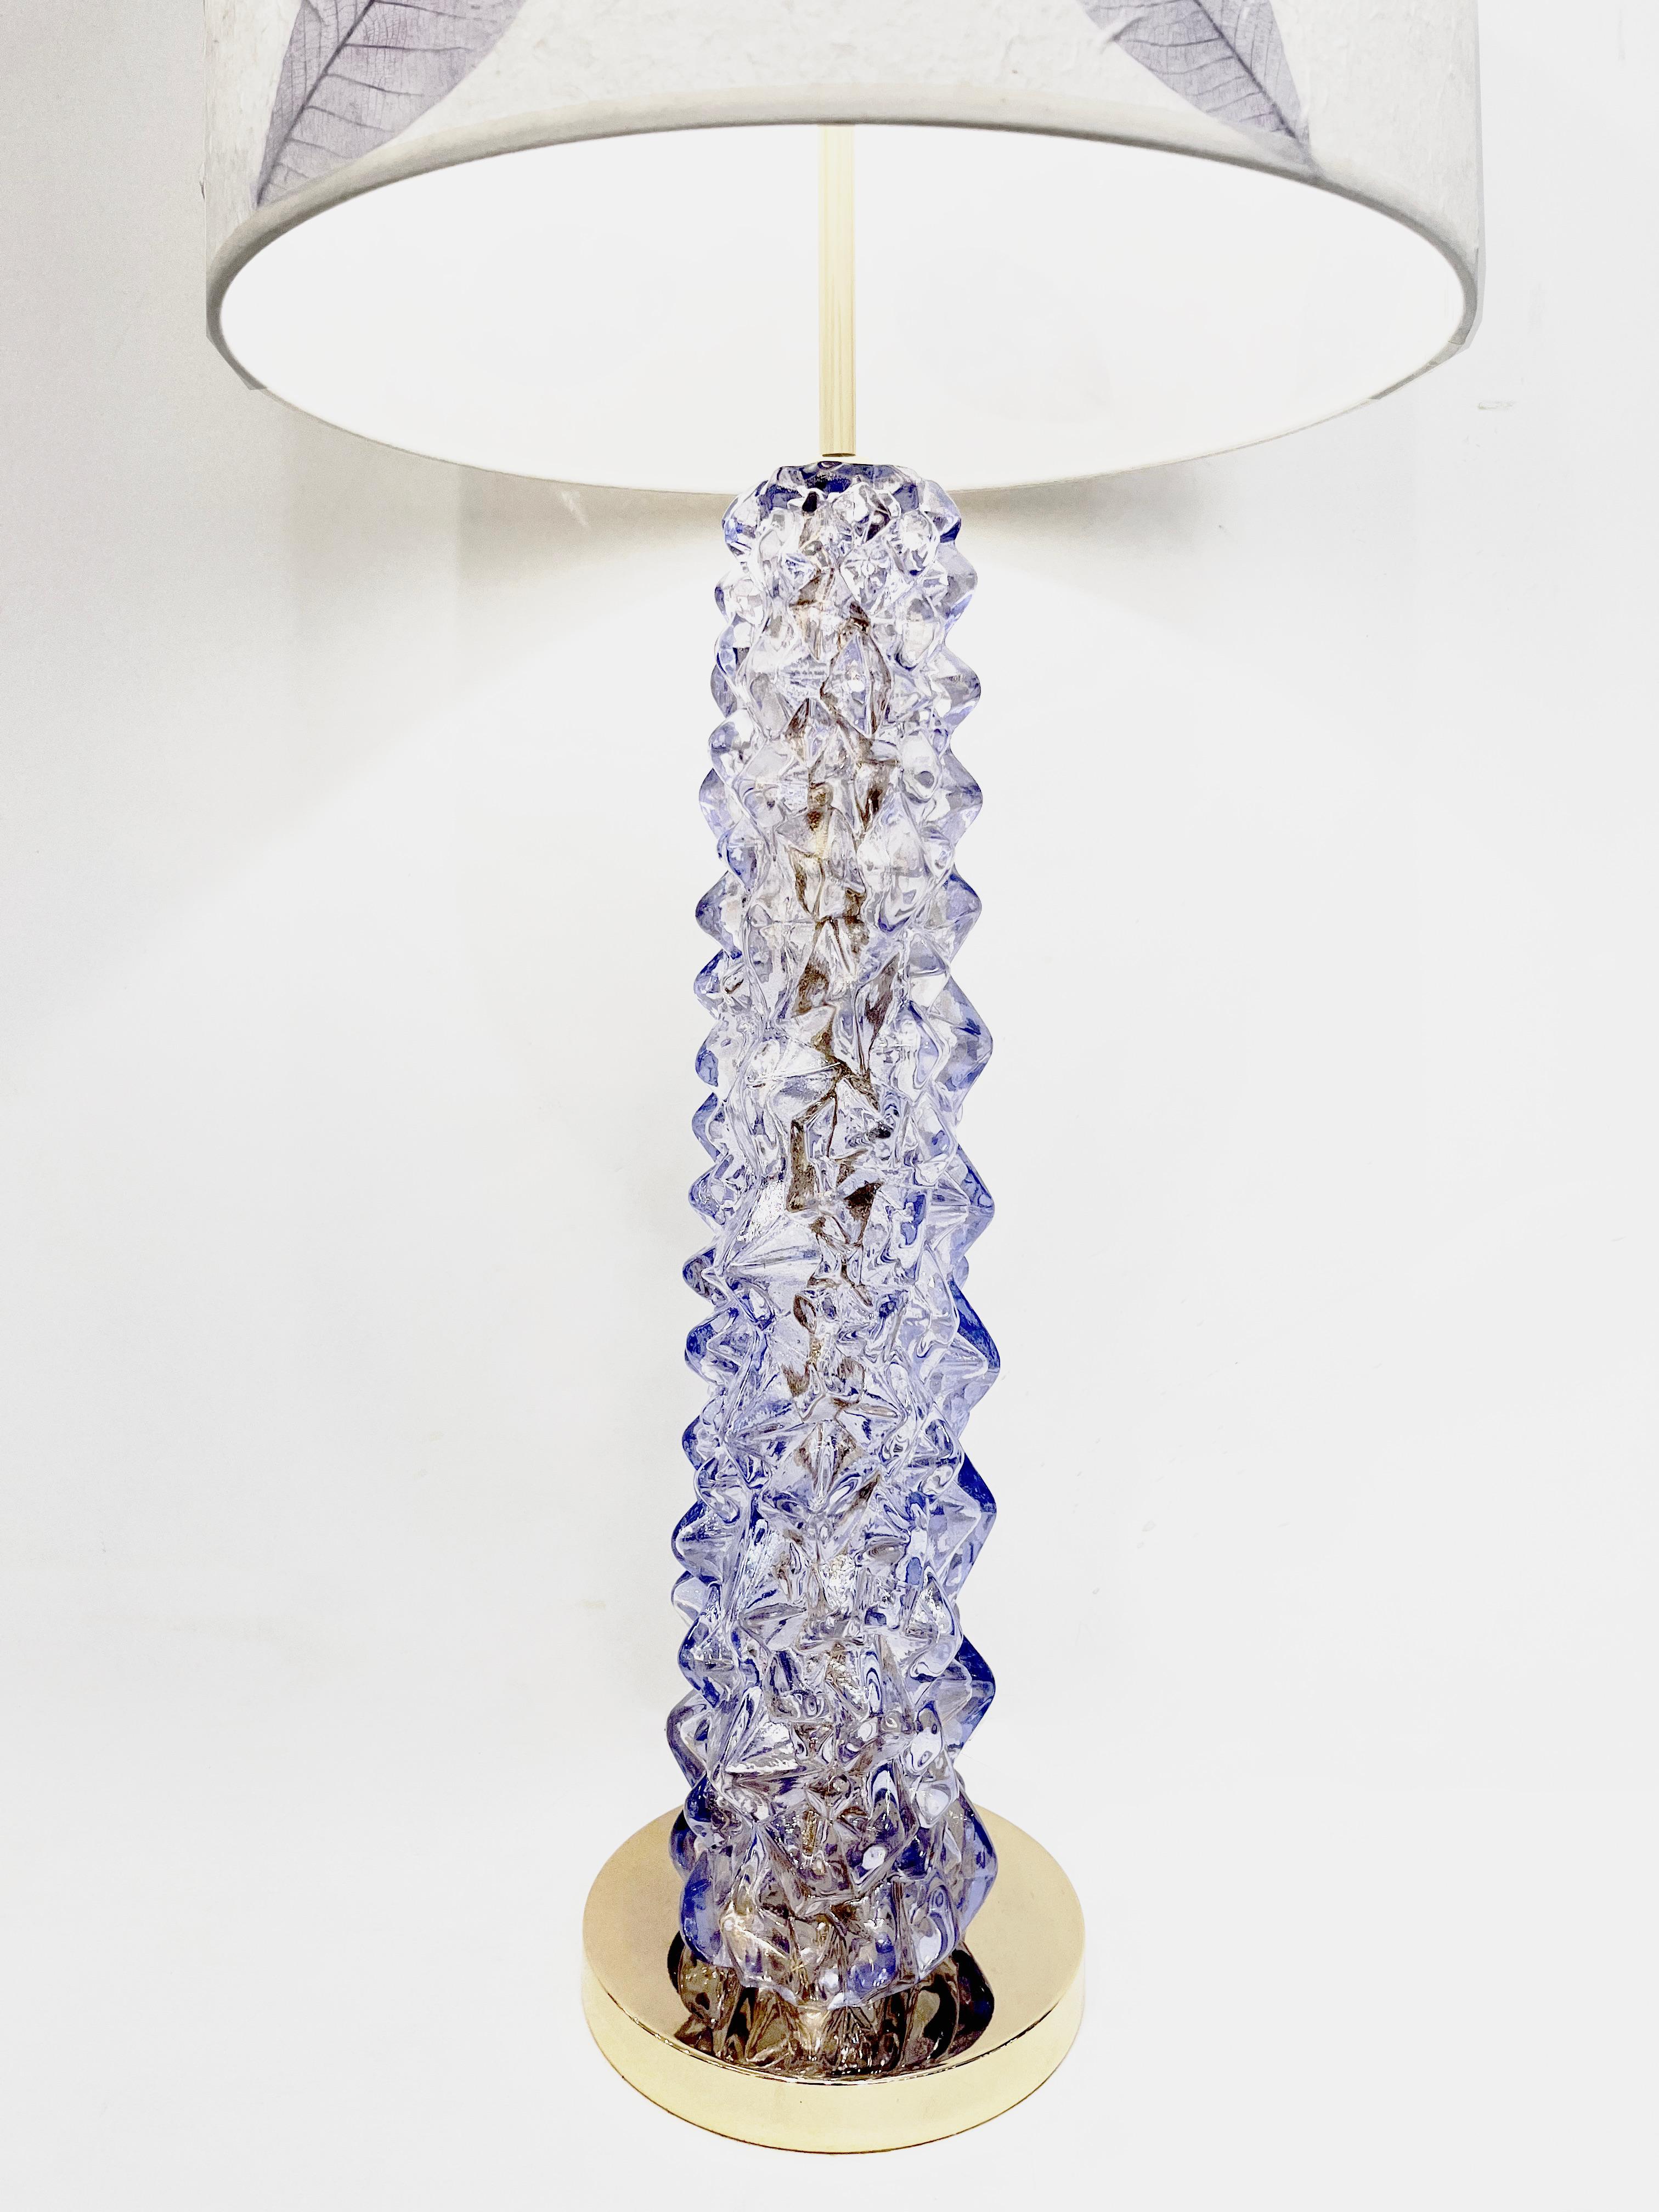 Modernes italienisches Paar hoher Lampen aus Muranoglas in einem leuchtenden Lavendelviolett. Der zentrale Körper ist mit einer unregelmäßigen, diamantgeschliffenen, juwelenartigen Textur versehen, die Lichtreflexe und Farbspiele vervielfacht, und